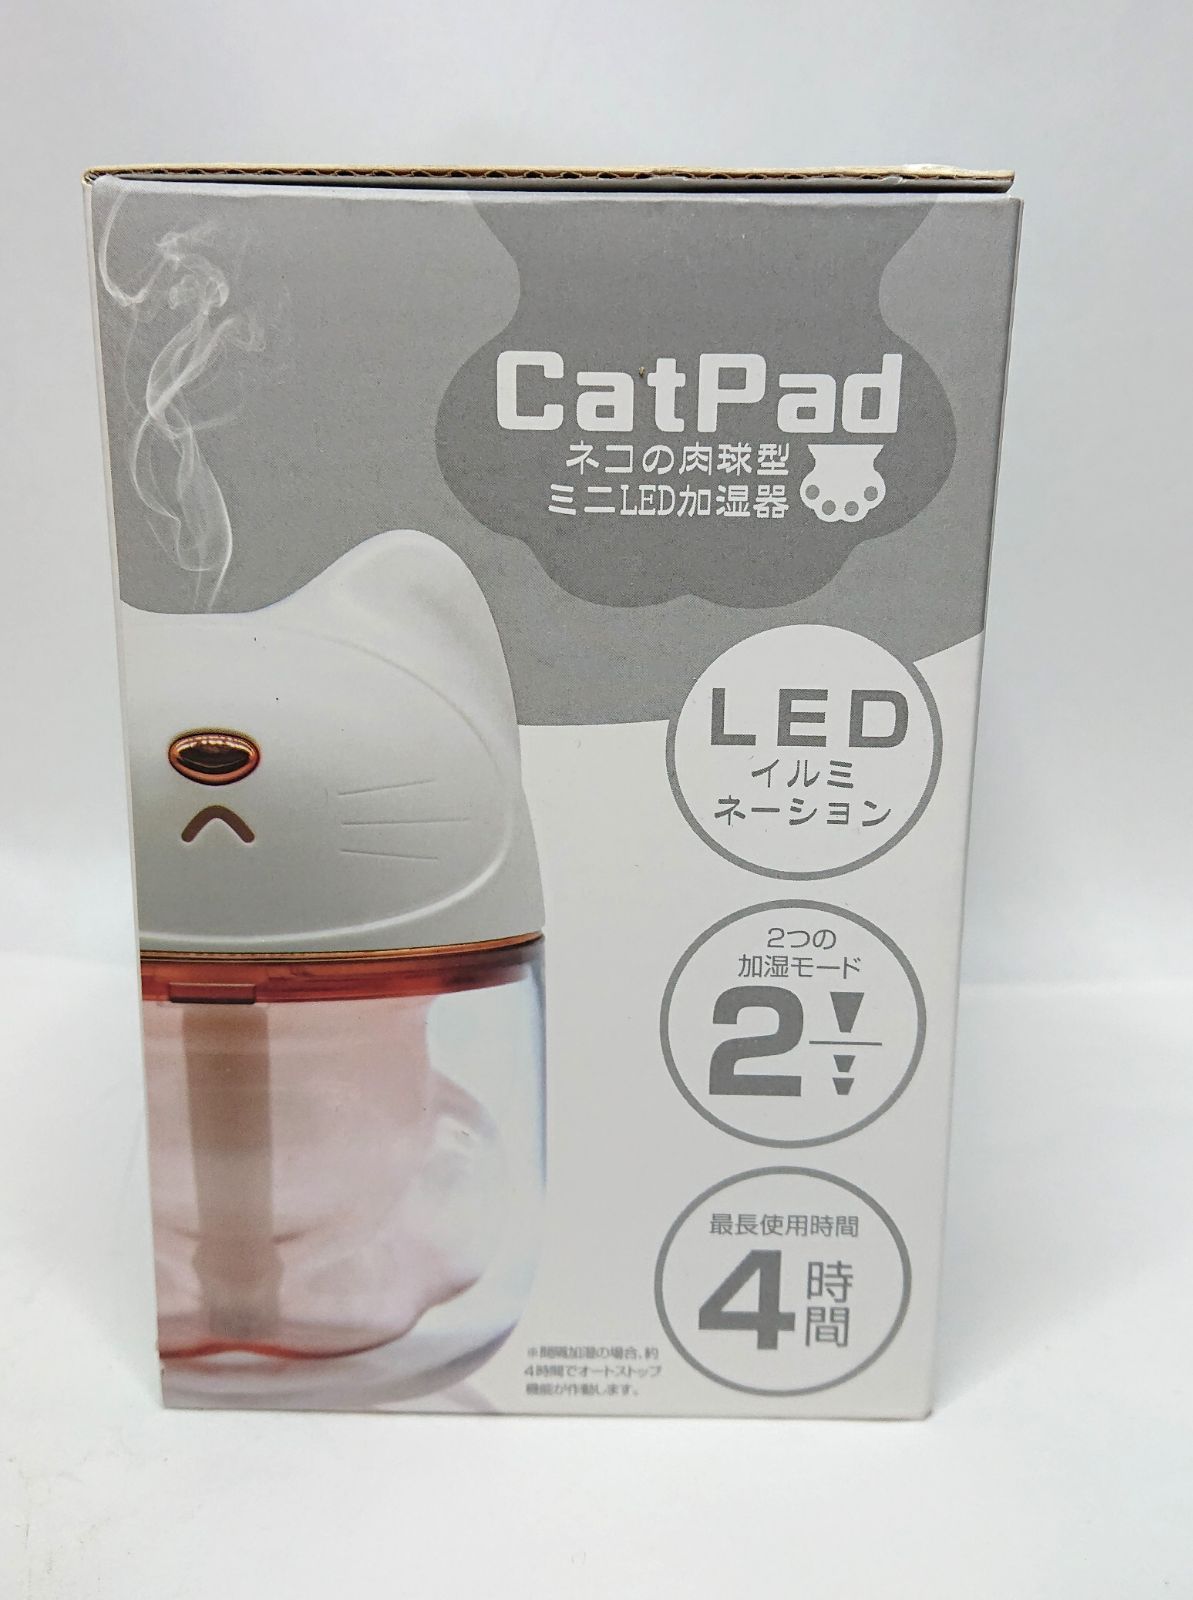 新品未使用 ネコの肉球型 ミニ LED 加湿器 ホワイト かわいい - メルカリ